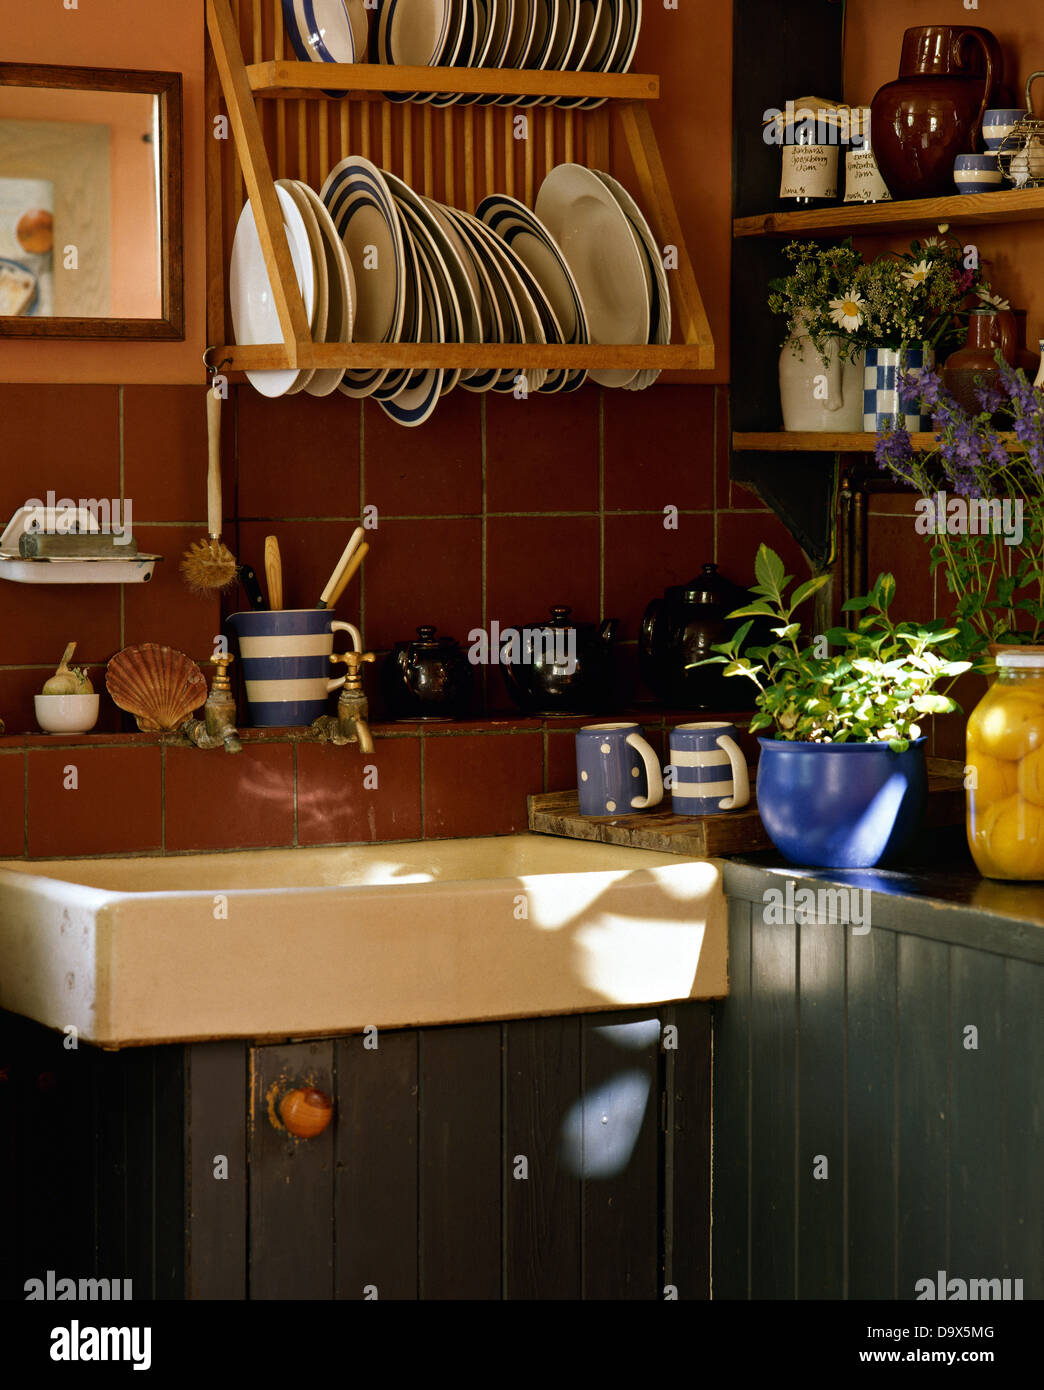 +azul con rayas blancas en placas de madera encima de rack Belfast Sink en cottage cocina con azulejos de color marrón y unidades pintadas de azul Foto de stock